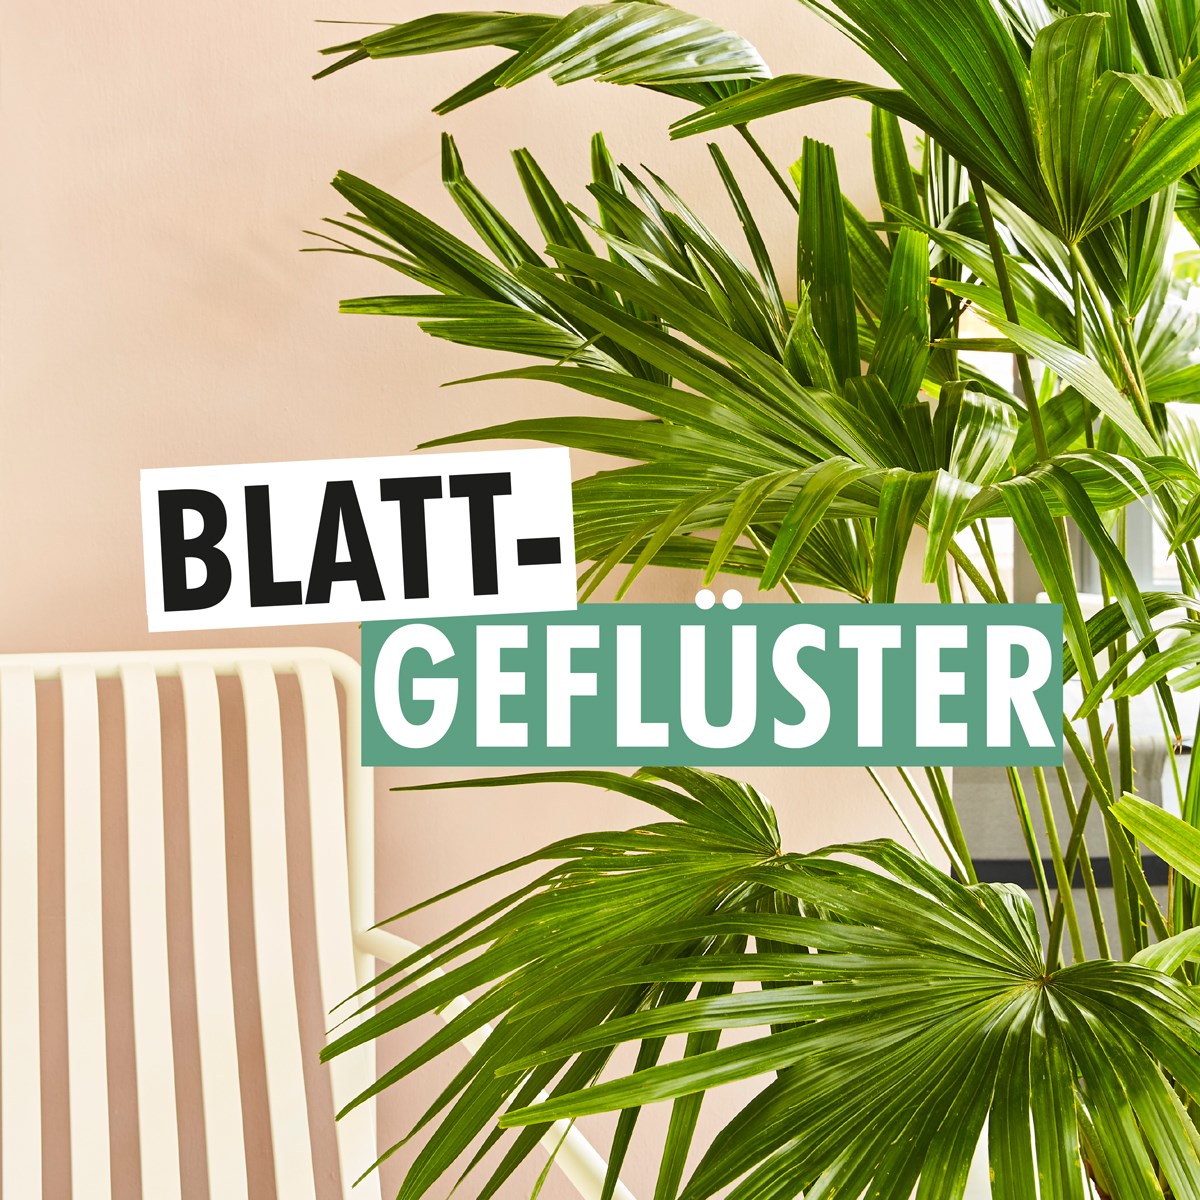 Blattgeflüster: ZUCKER. relies on podcast PR with the Flower Council Holland